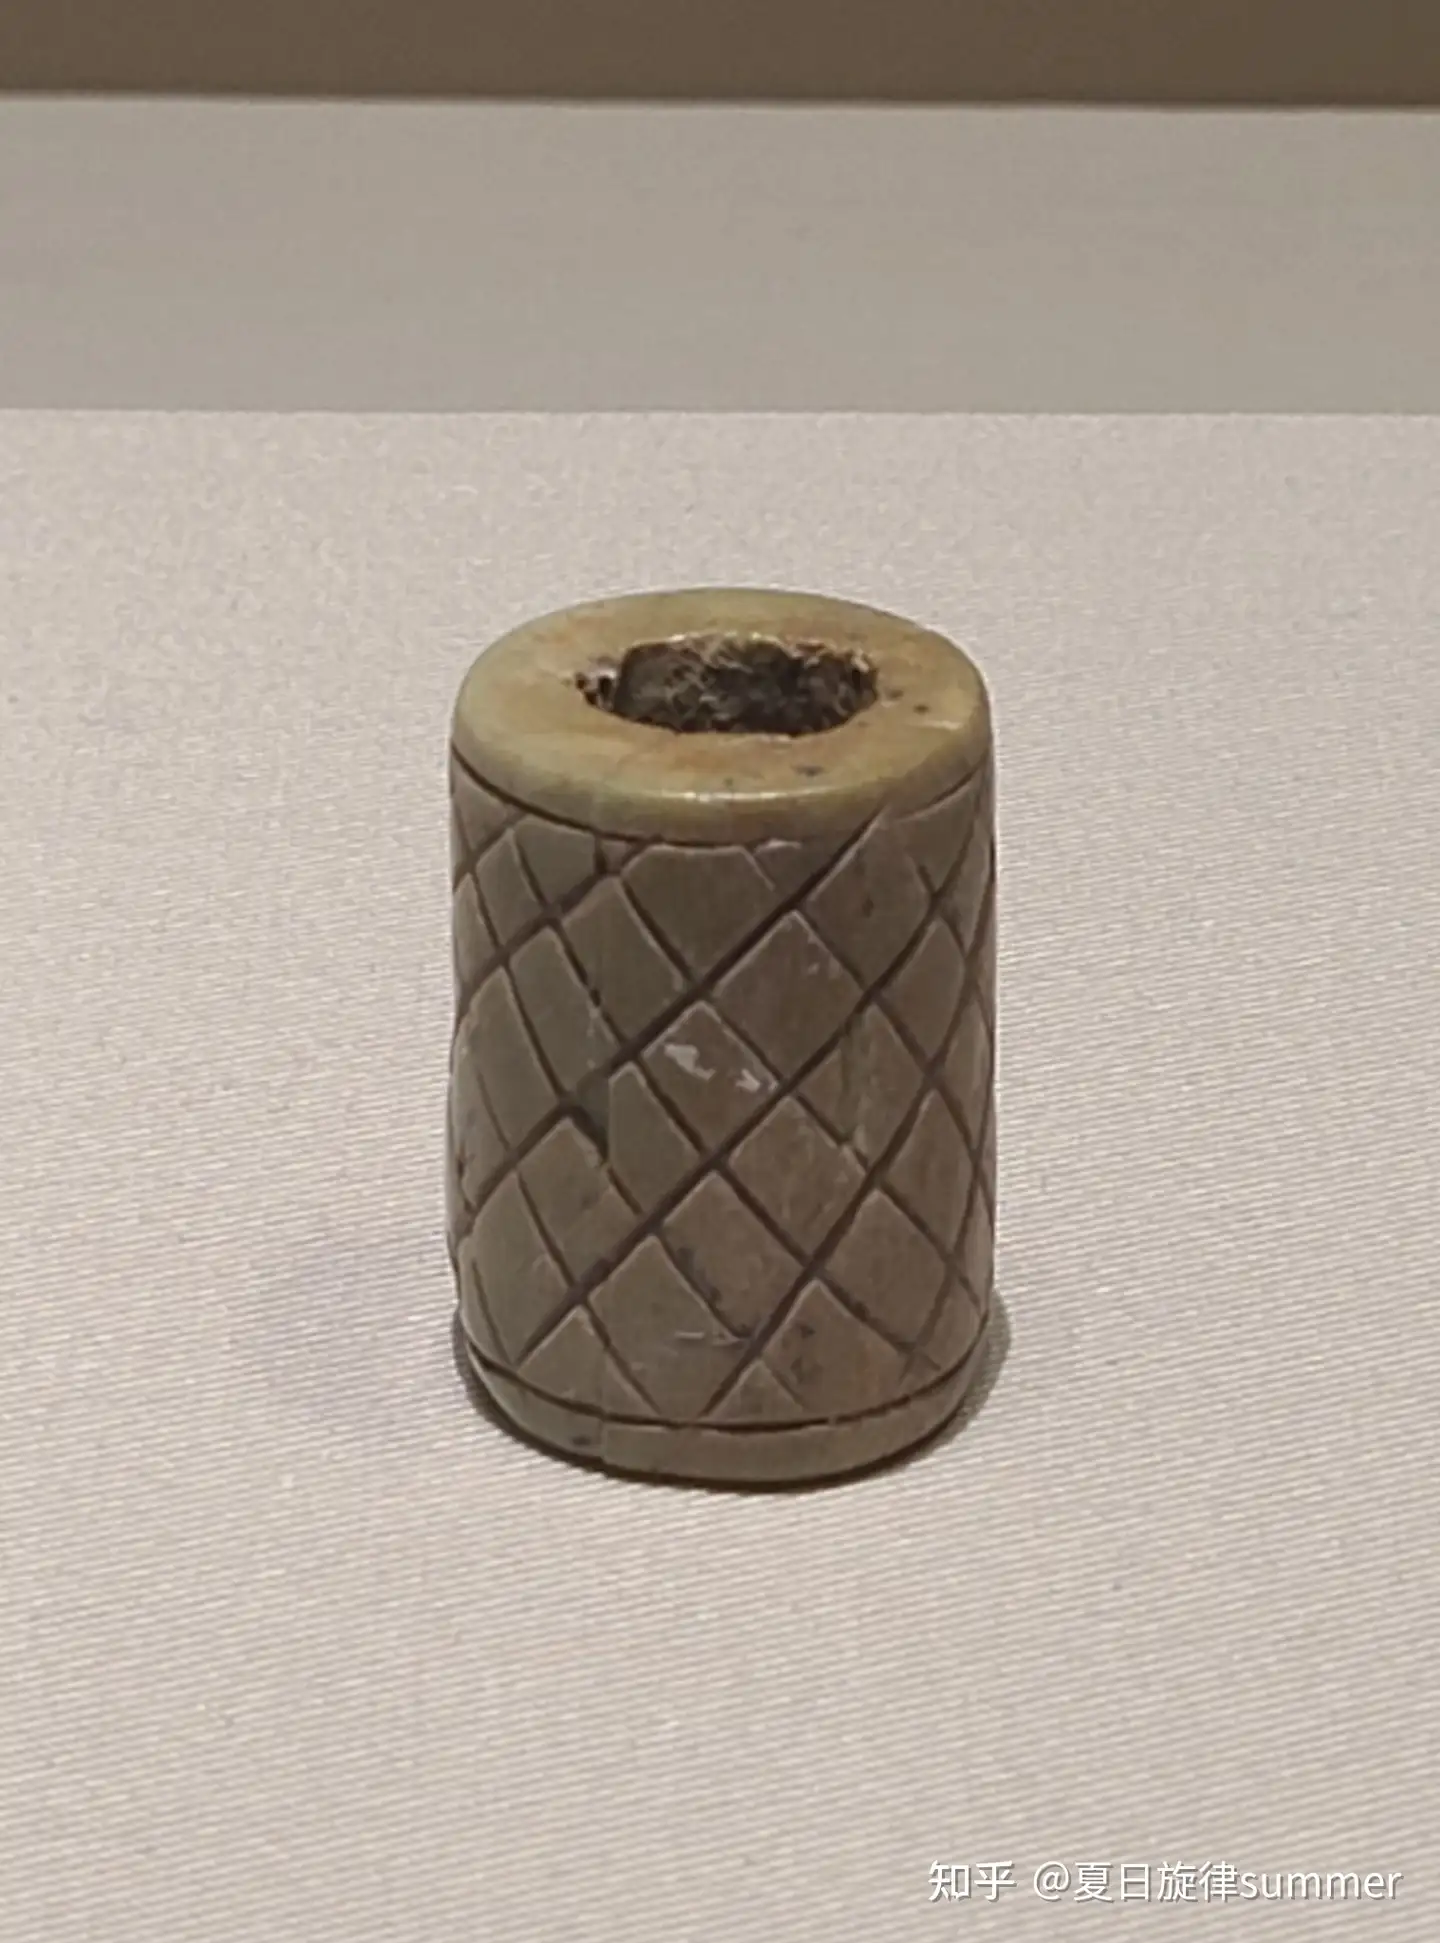 メカニカル 古印材 六面体の印紐 青銅器 青錆 骨董品 時代物 | www